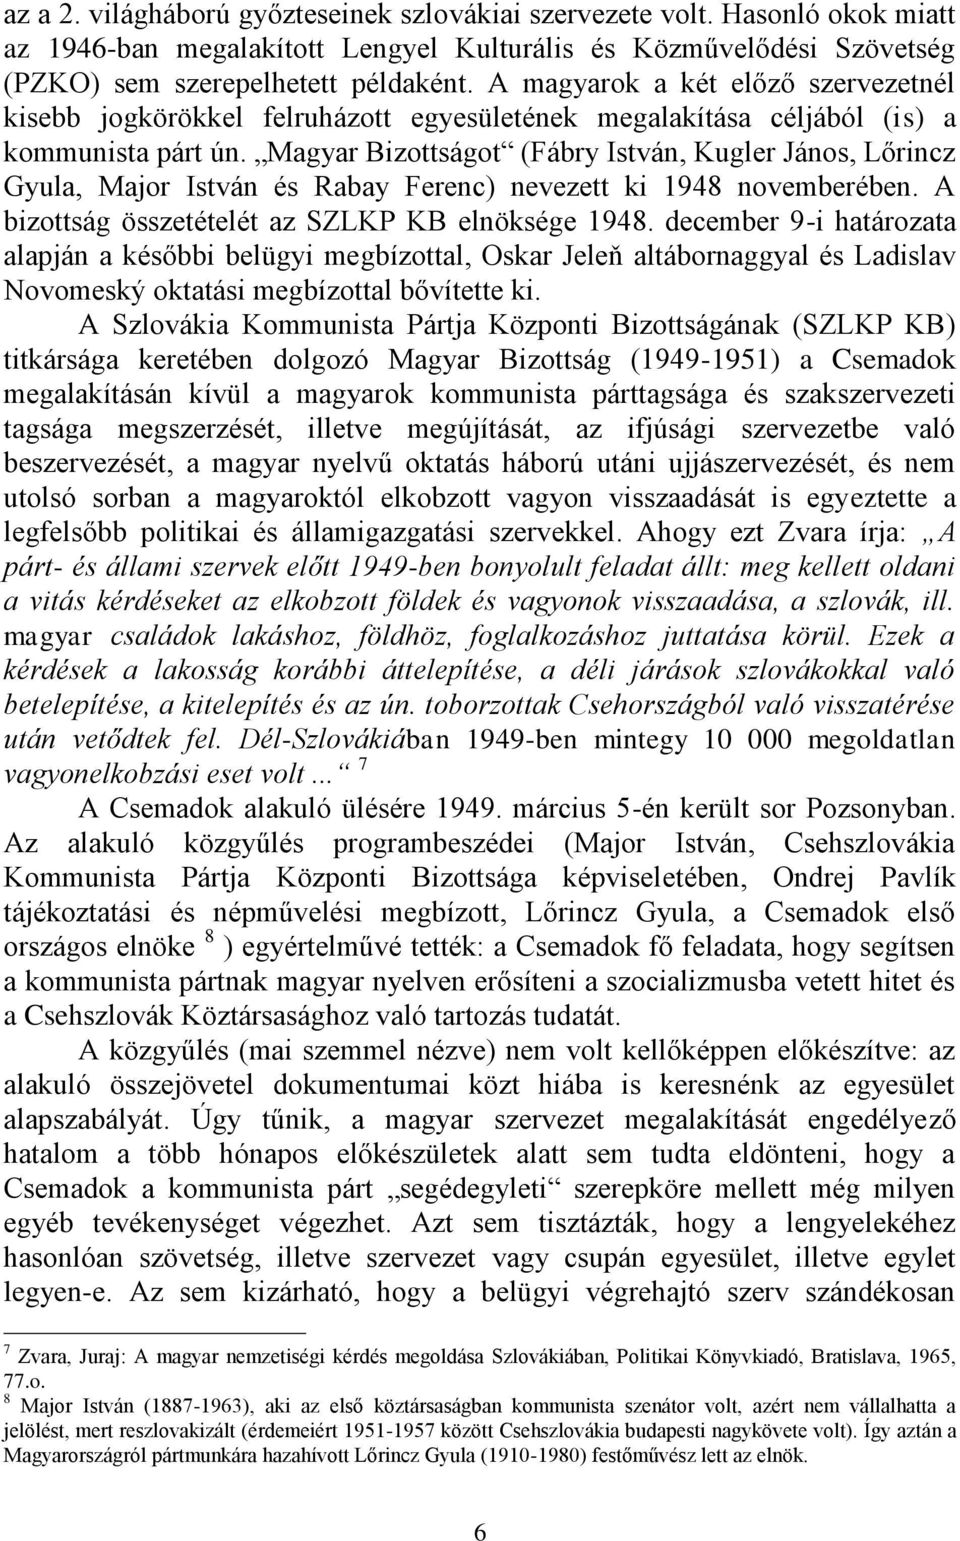 Magyar Bizottságot (Fábry István, Kugler János, Lőrincz Gyula, Major István és Rabay Ferenc) nevezett ki 1948 novemberében. A bizottság összetételét az SZLKP KB elnöksége 1948.